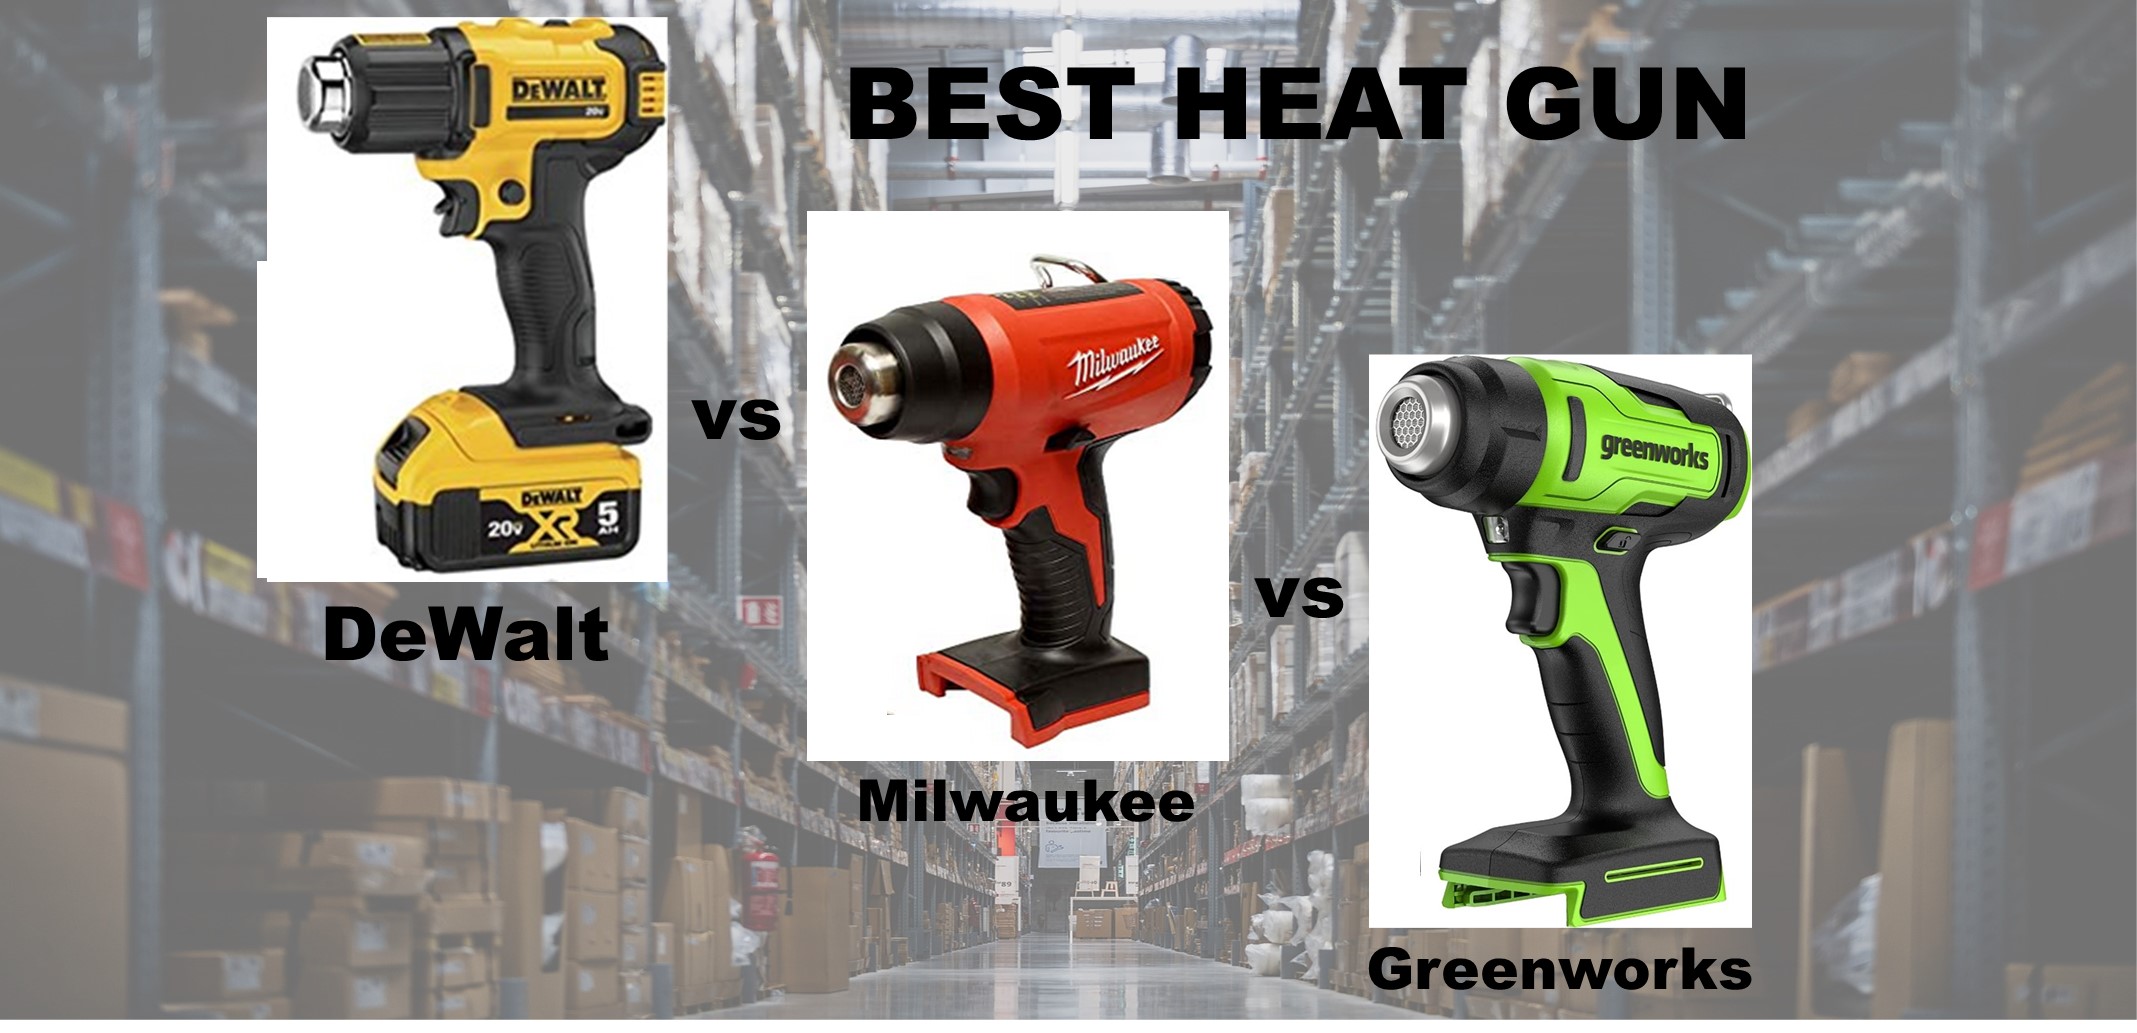 udtale Lad os gøre det høj Best Heat Gun – DeWalt vs Milwaukee vs Greenworks